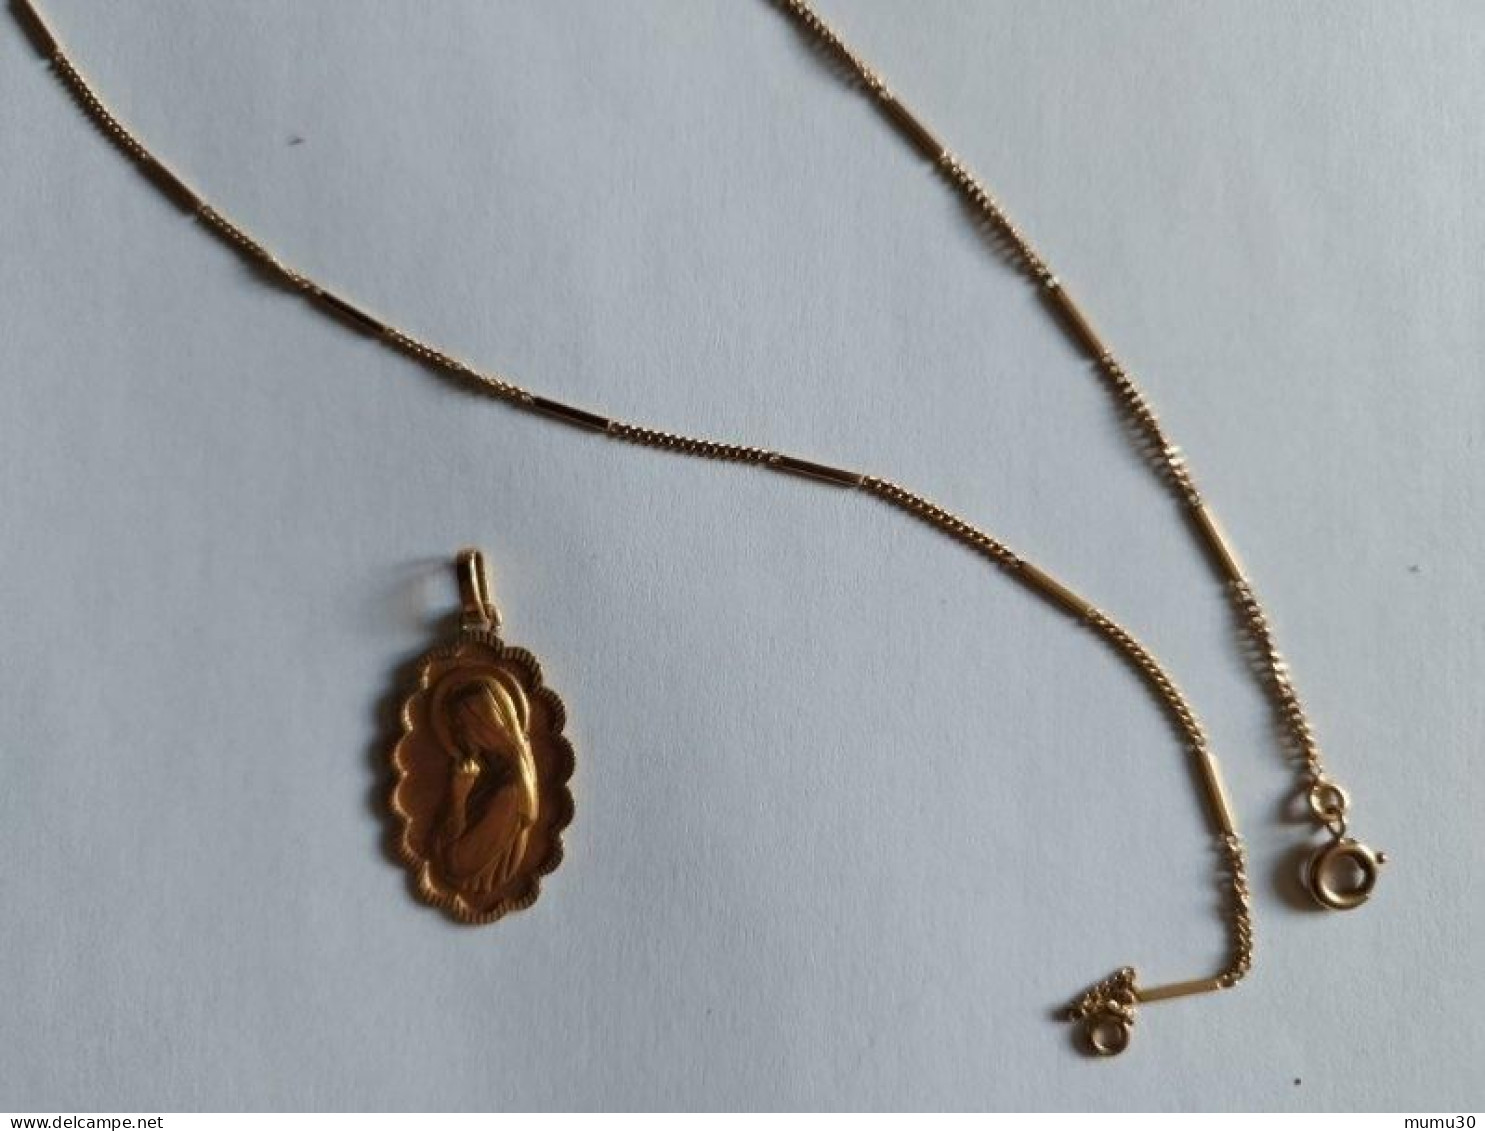 Magnifique médaille religieuse OR 750 - Années 70 "Sainte Marie" 6,1 grammes d'or avec la Chaîne Bijou